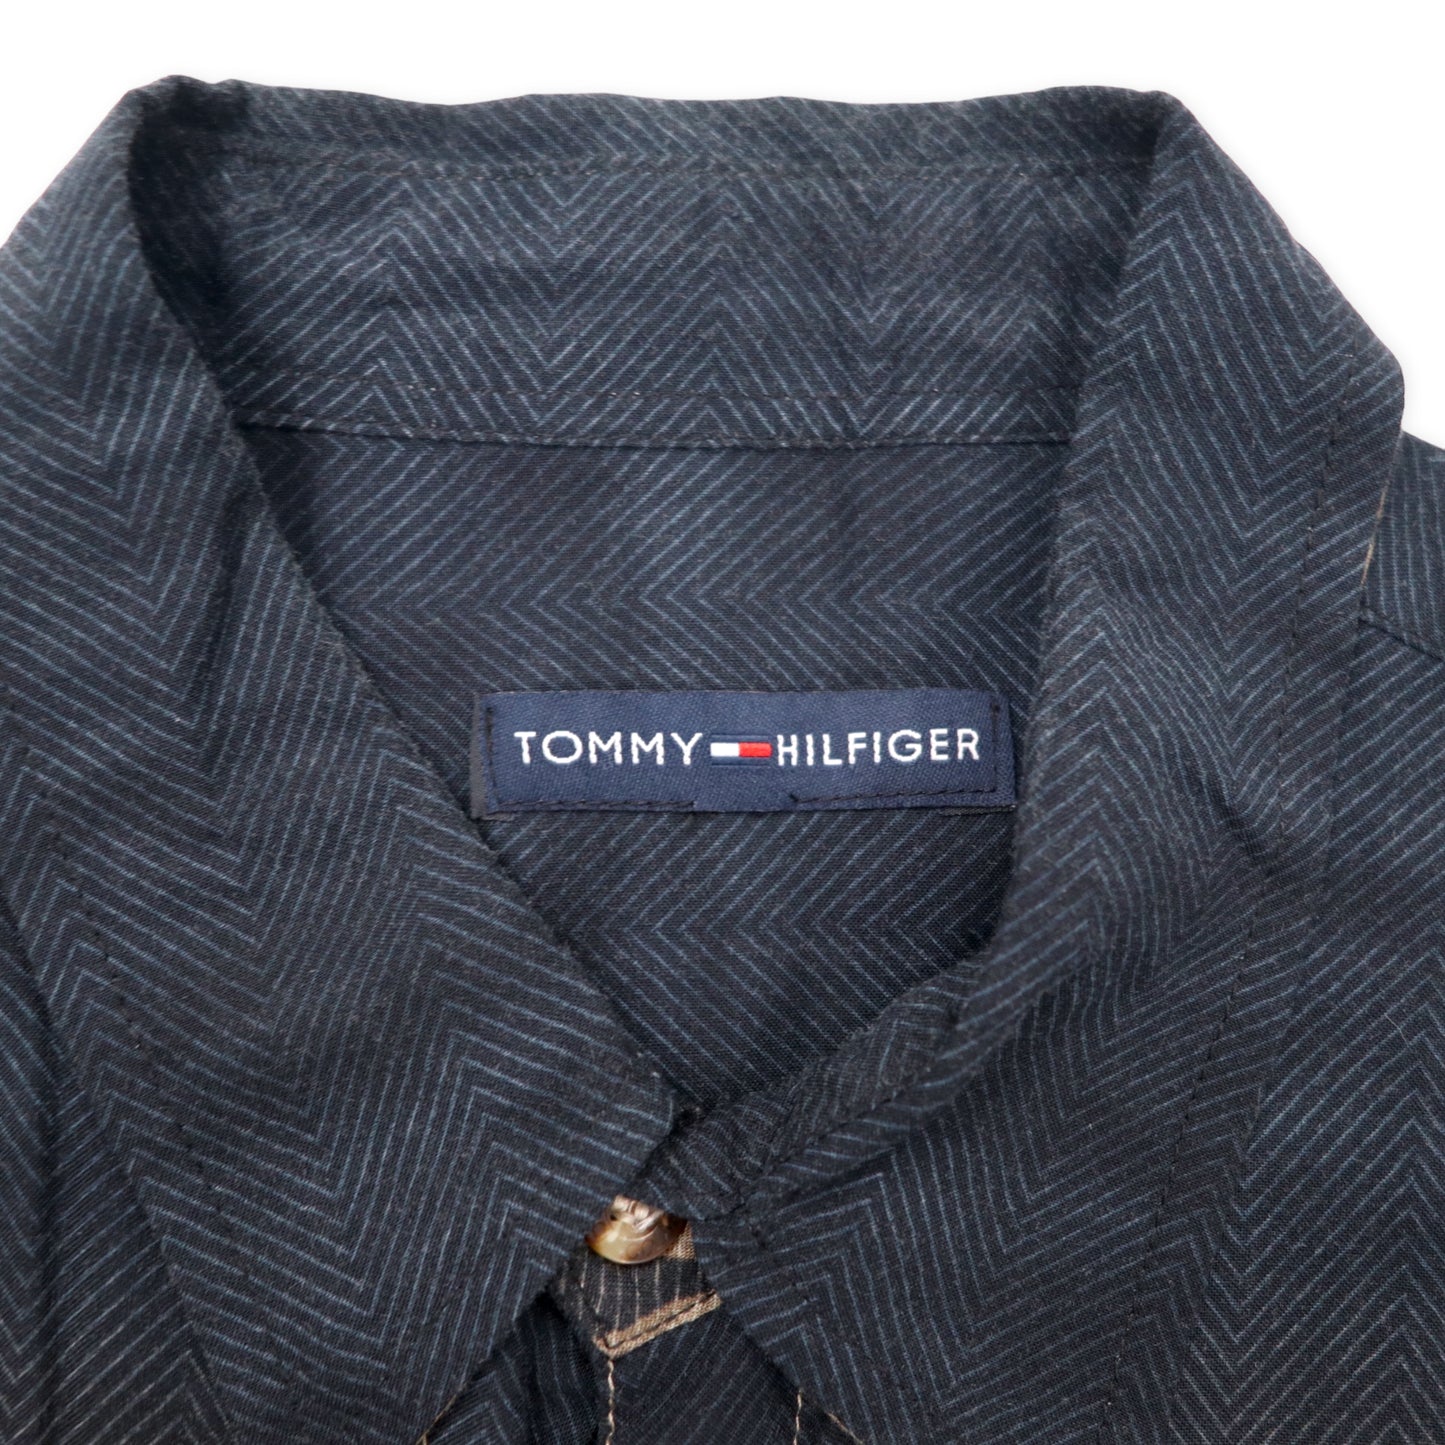 TOMMY HILFIGER アロハシャツ XXL ブラック カーキ レーヨン 総柄 ビーチ ヤシの木 ビッグサイズ